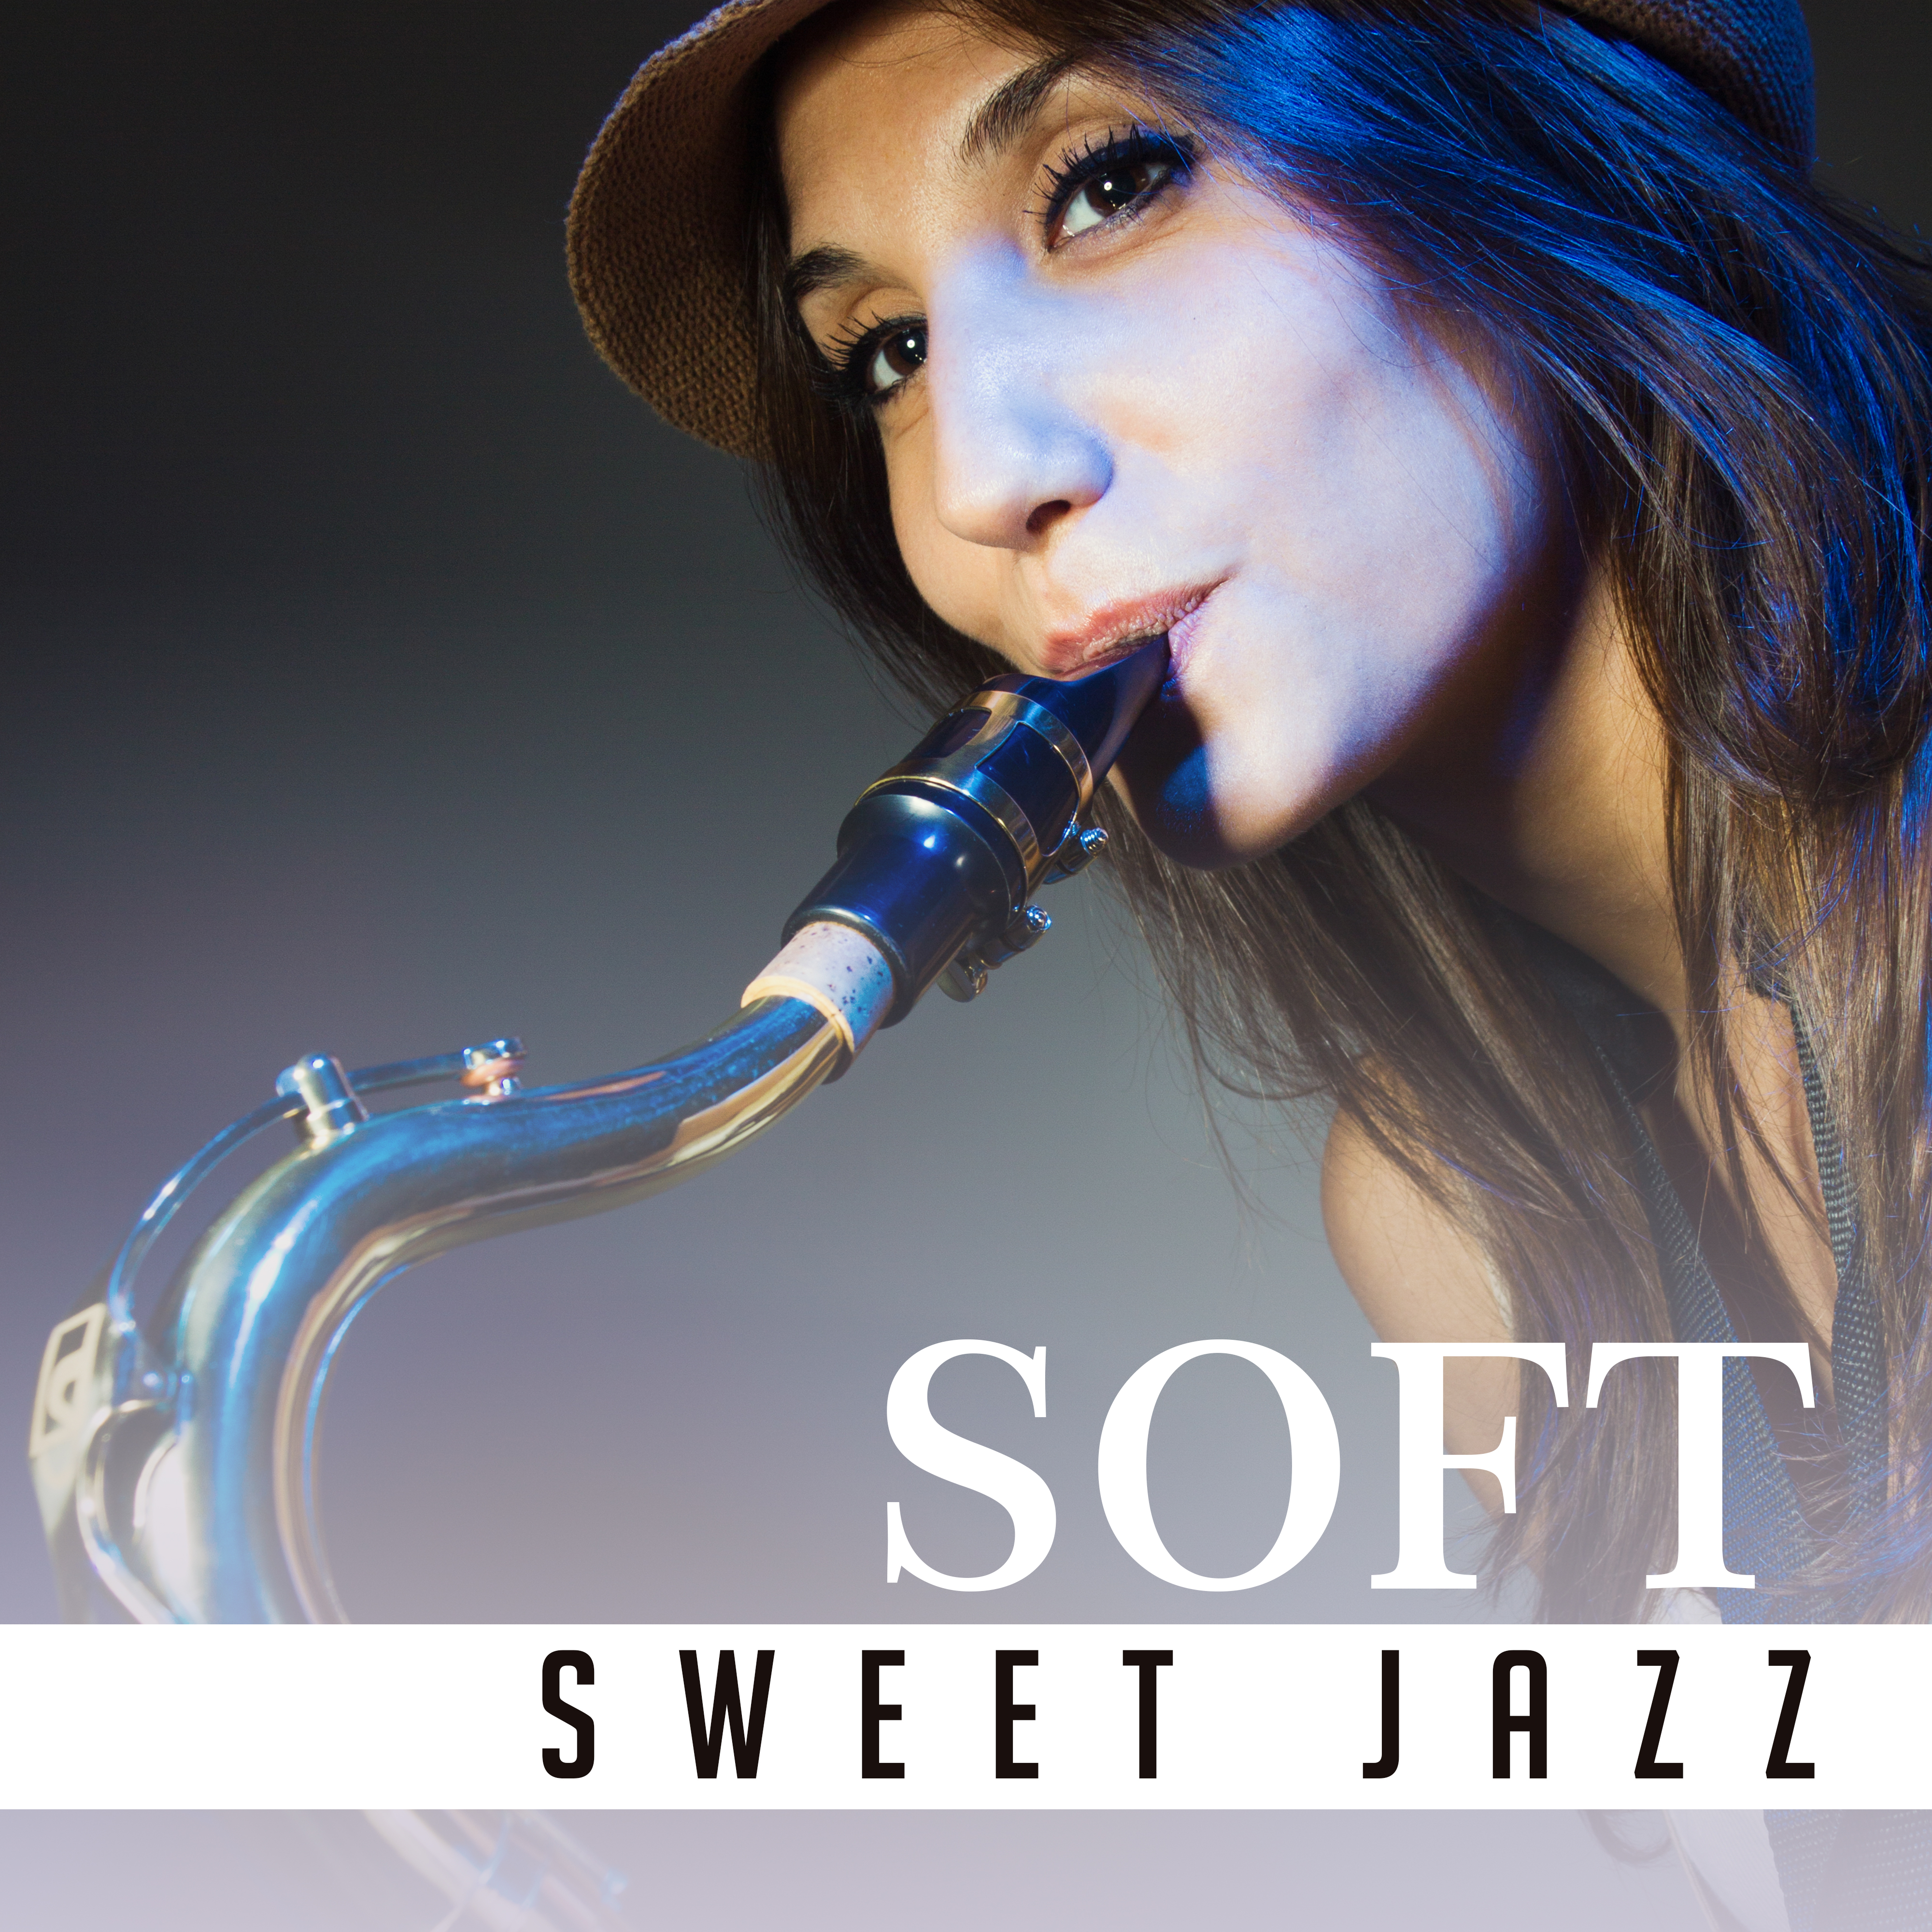 Soft Sweet Jazz